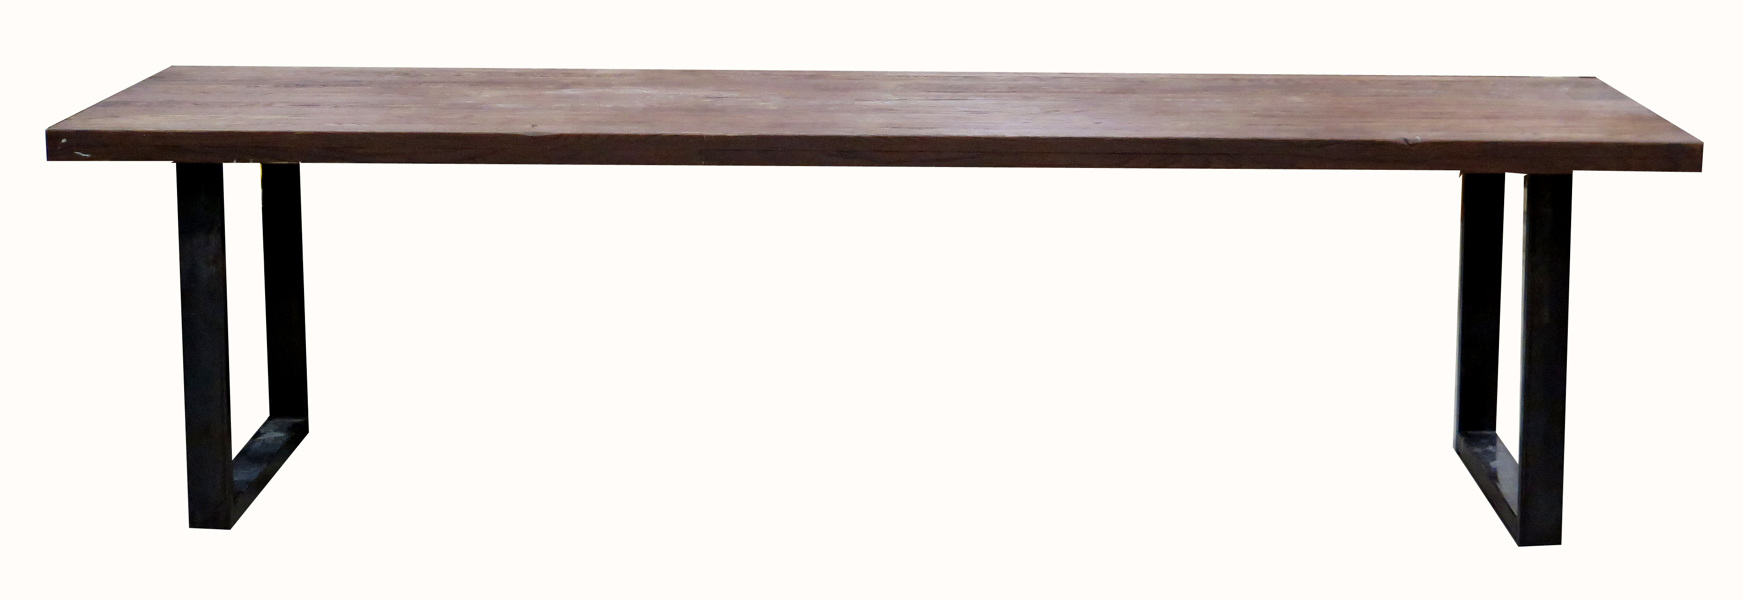 Okänd designer för Kristensen & Kristensen, mat/konferensbord, bonat trä på svetsat järnunderrede, _16298a_8d9e0f18f127849_lg.jpeg